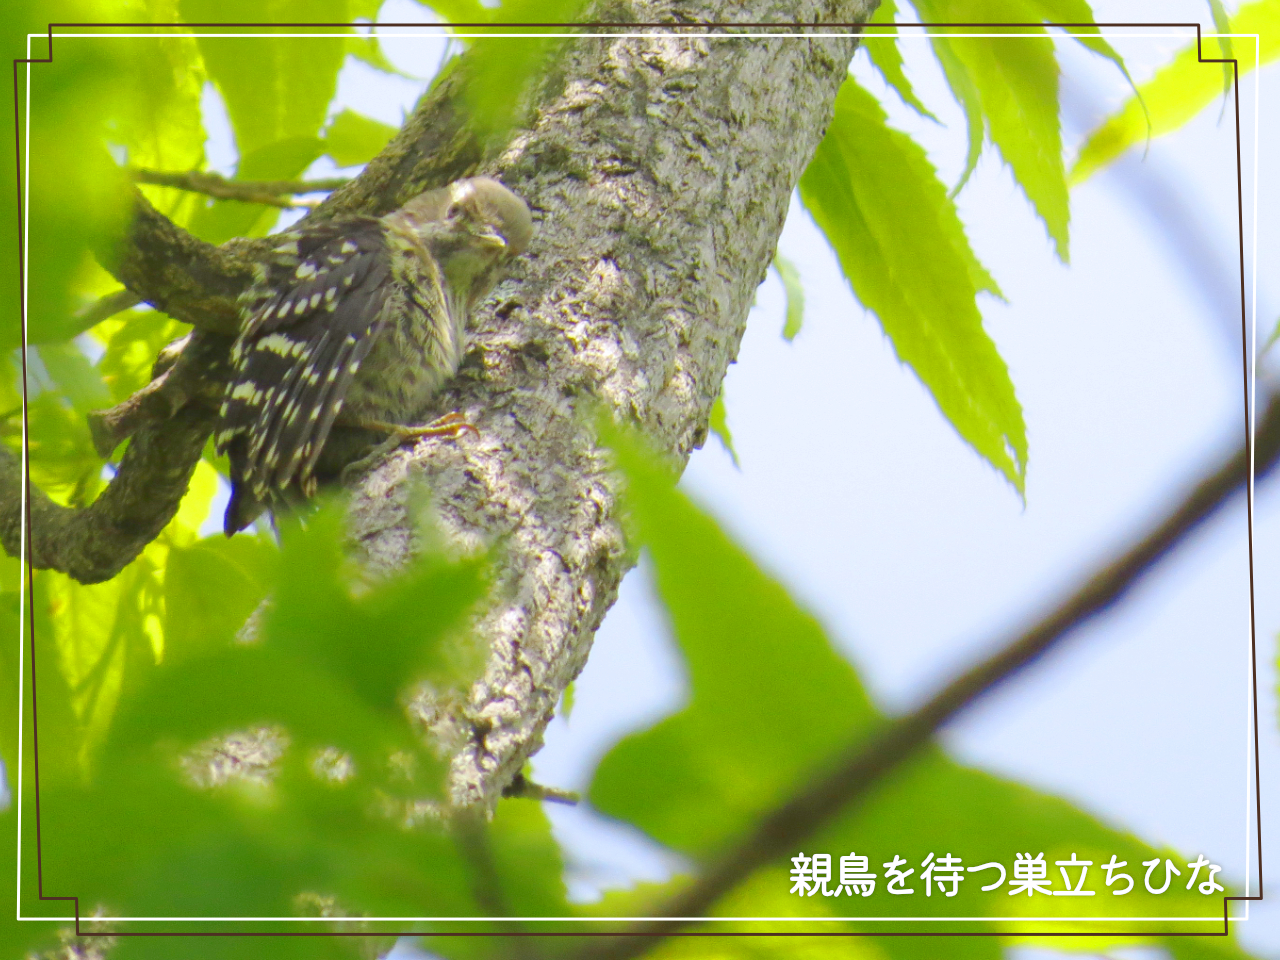 上手に木にしがみつくコゲラの巣立ちひなの写真